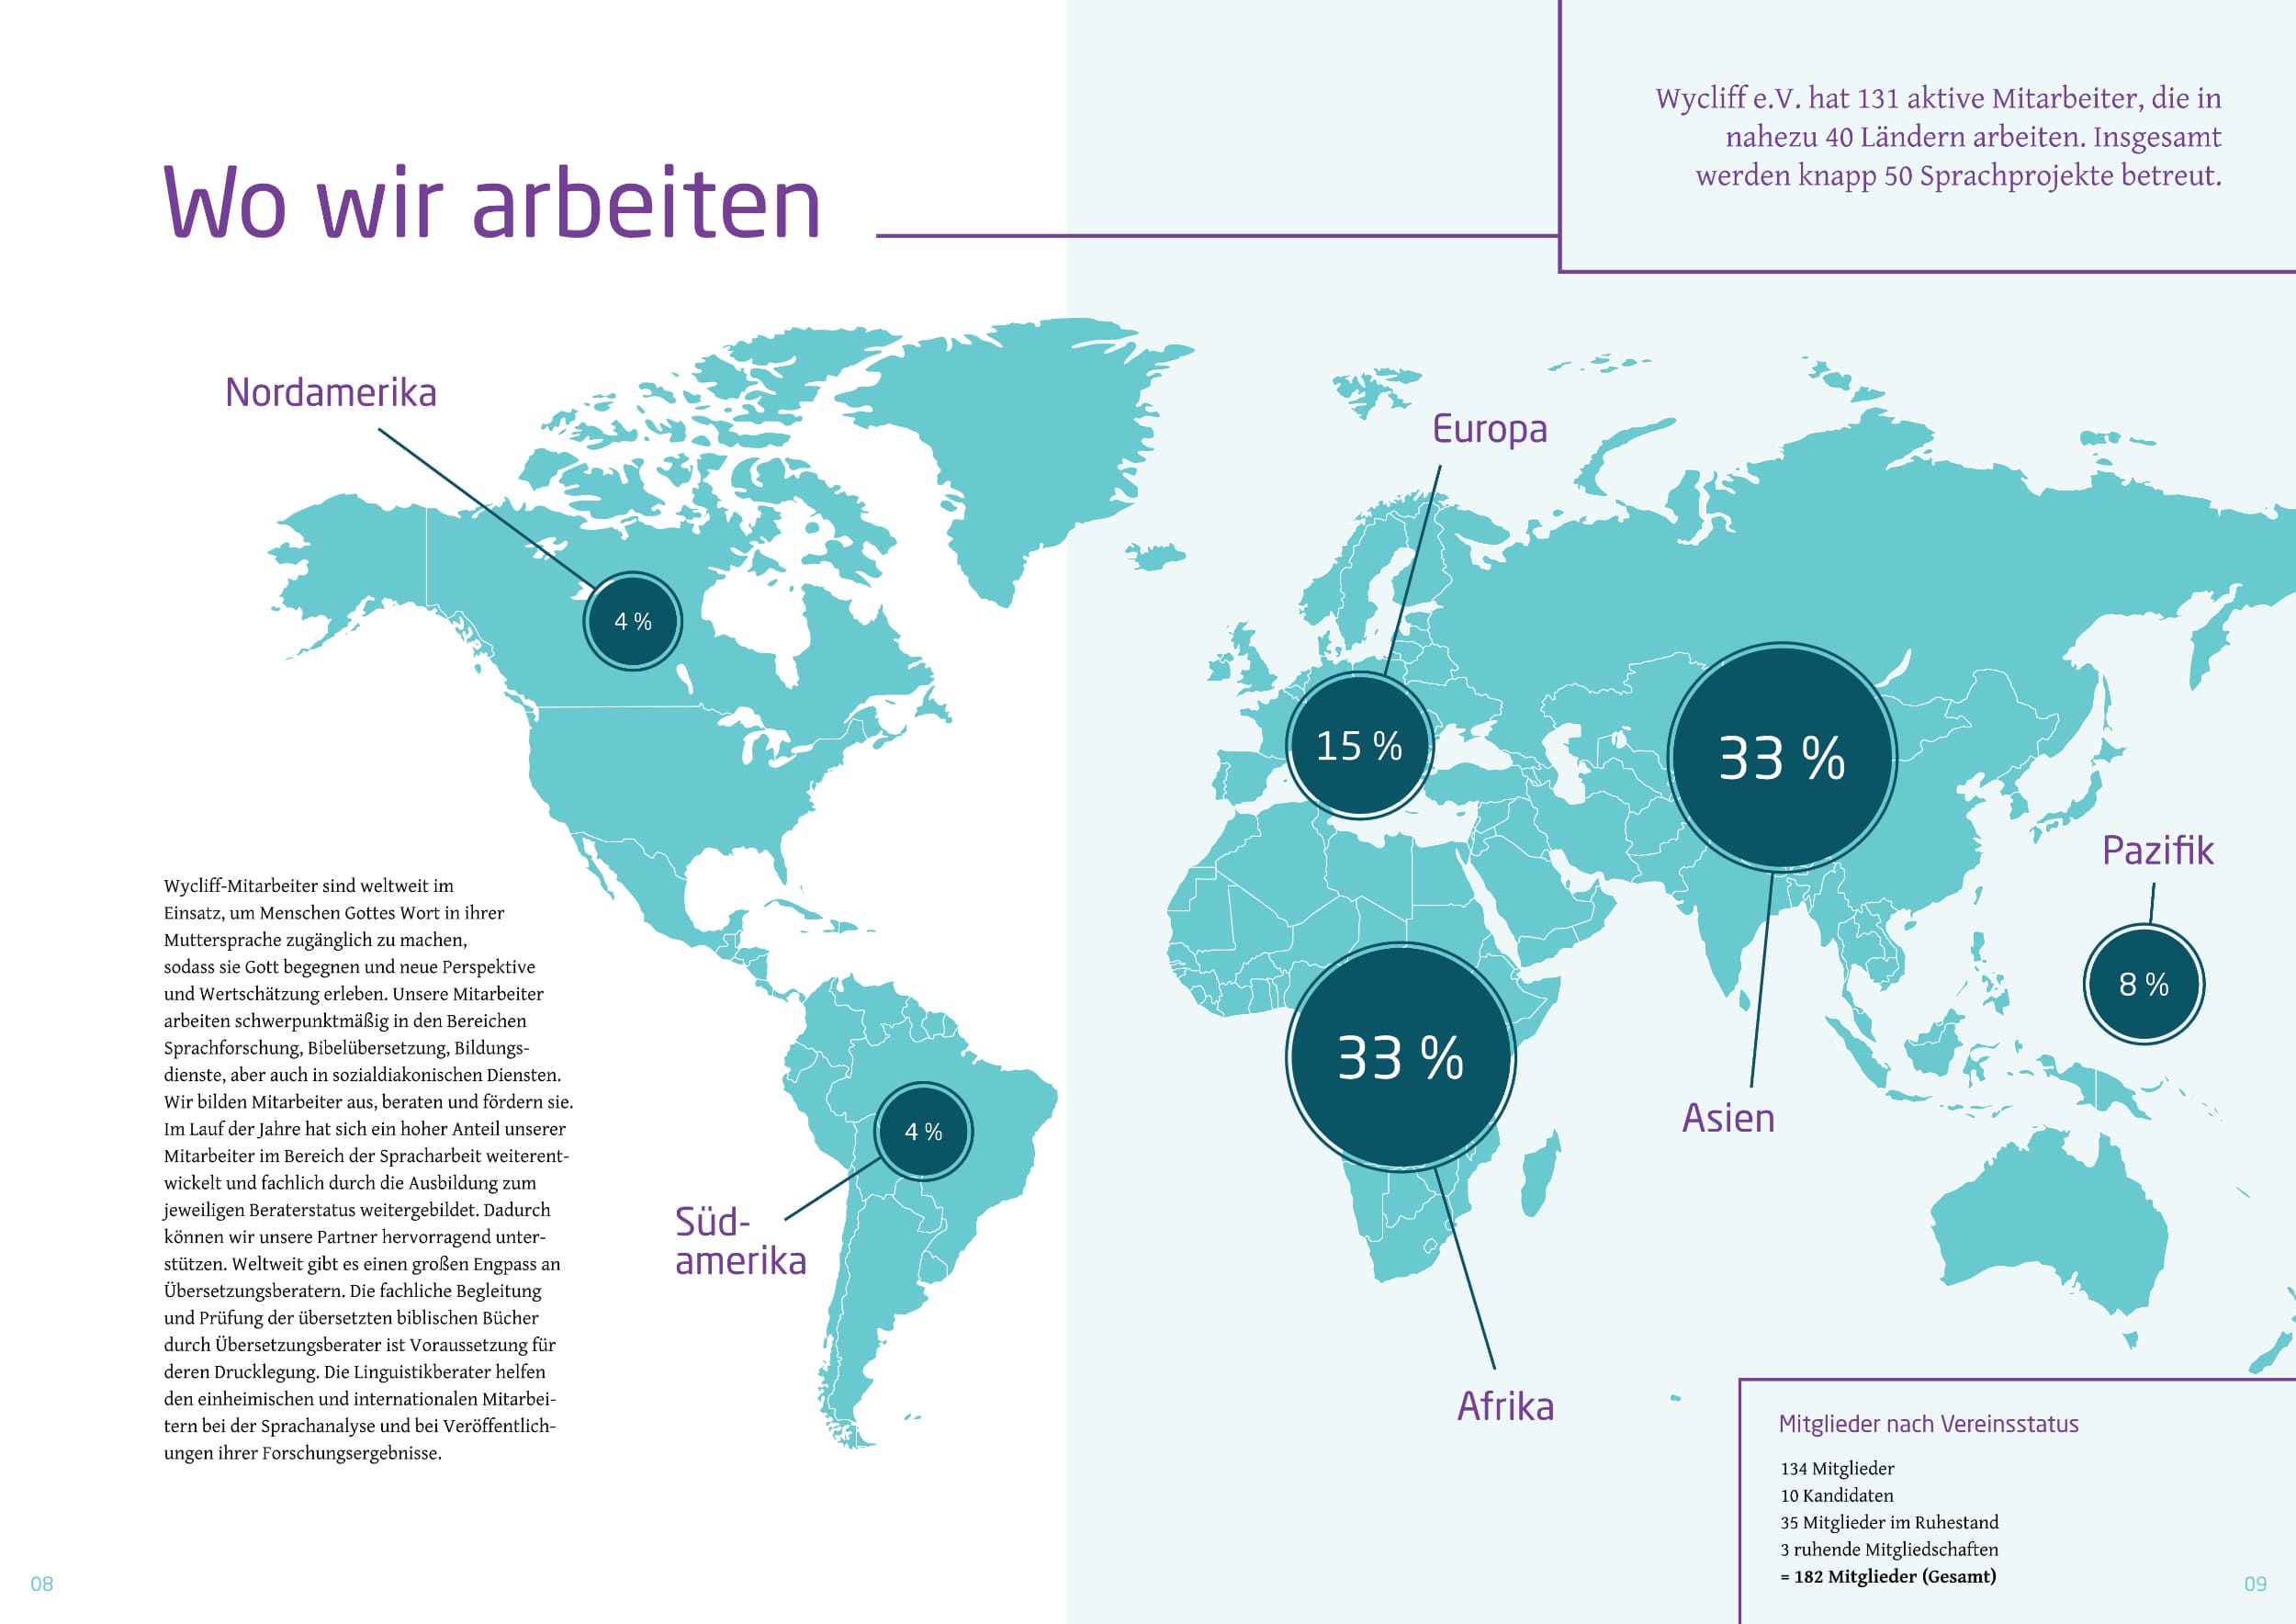 Wycliff Jahresbericht Weltkarte